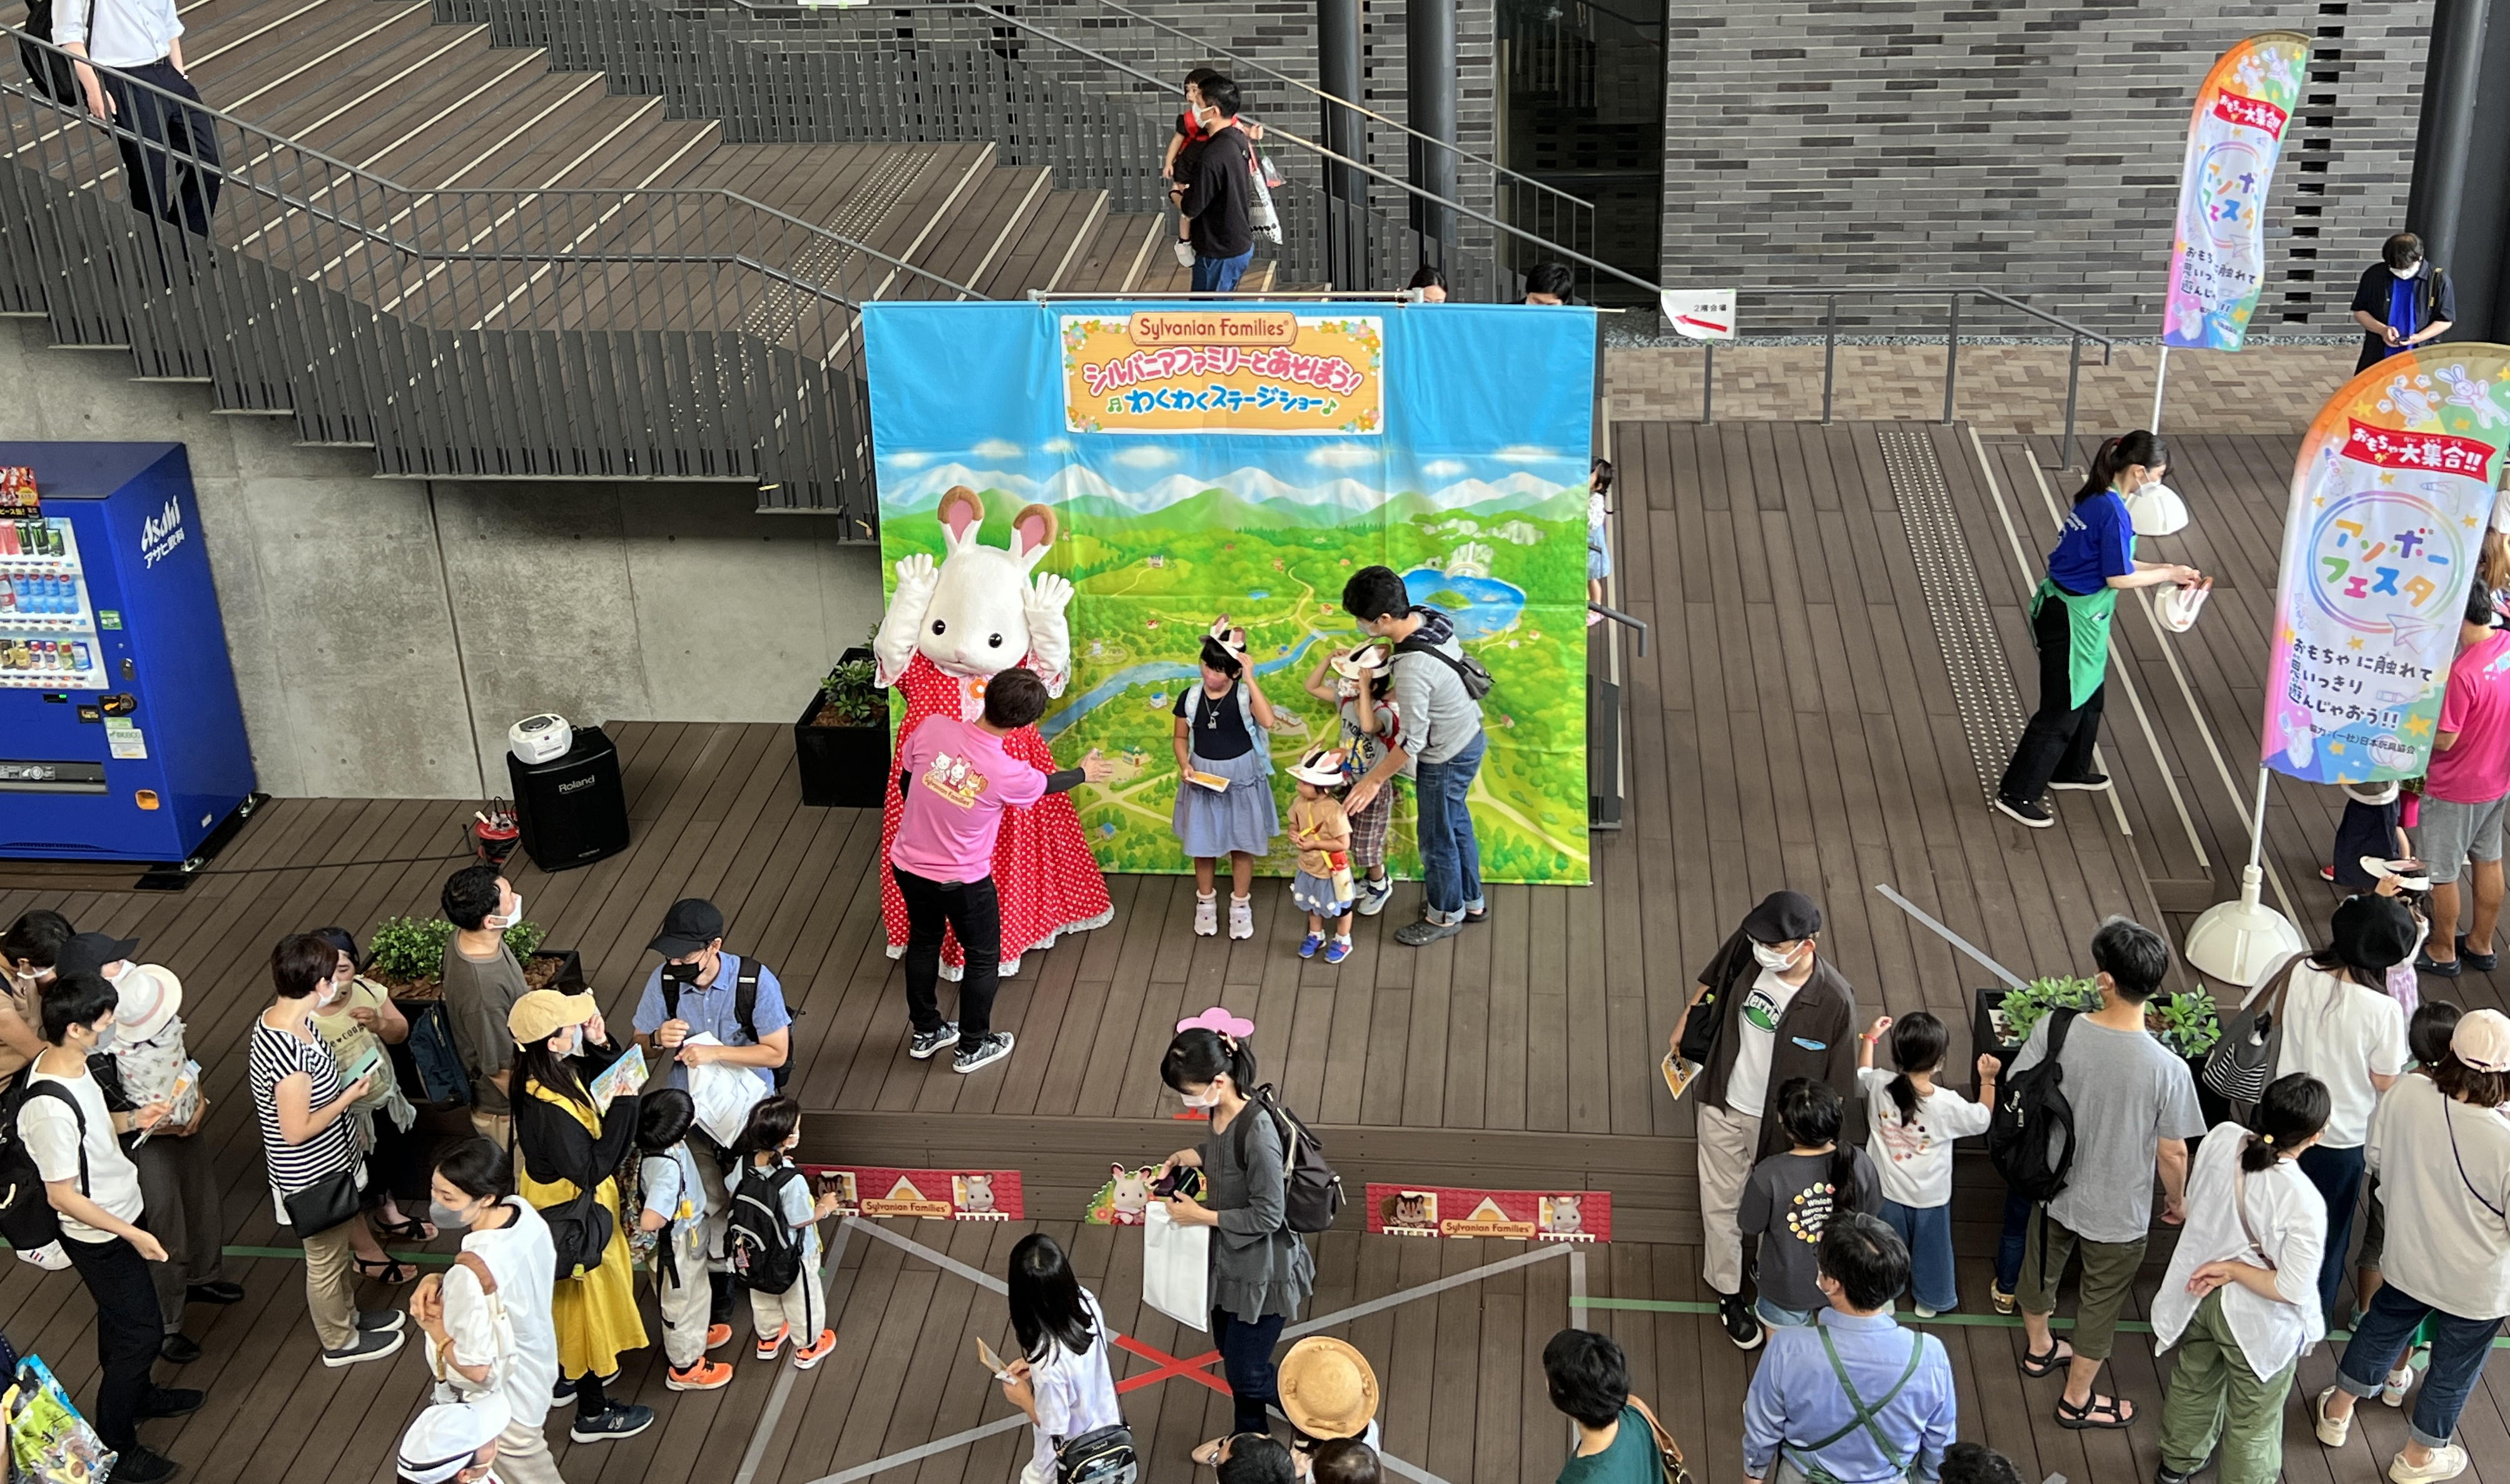 【京都産業大学】地域交流イベント「サタデージャンボリー」を3年ぶりに開催